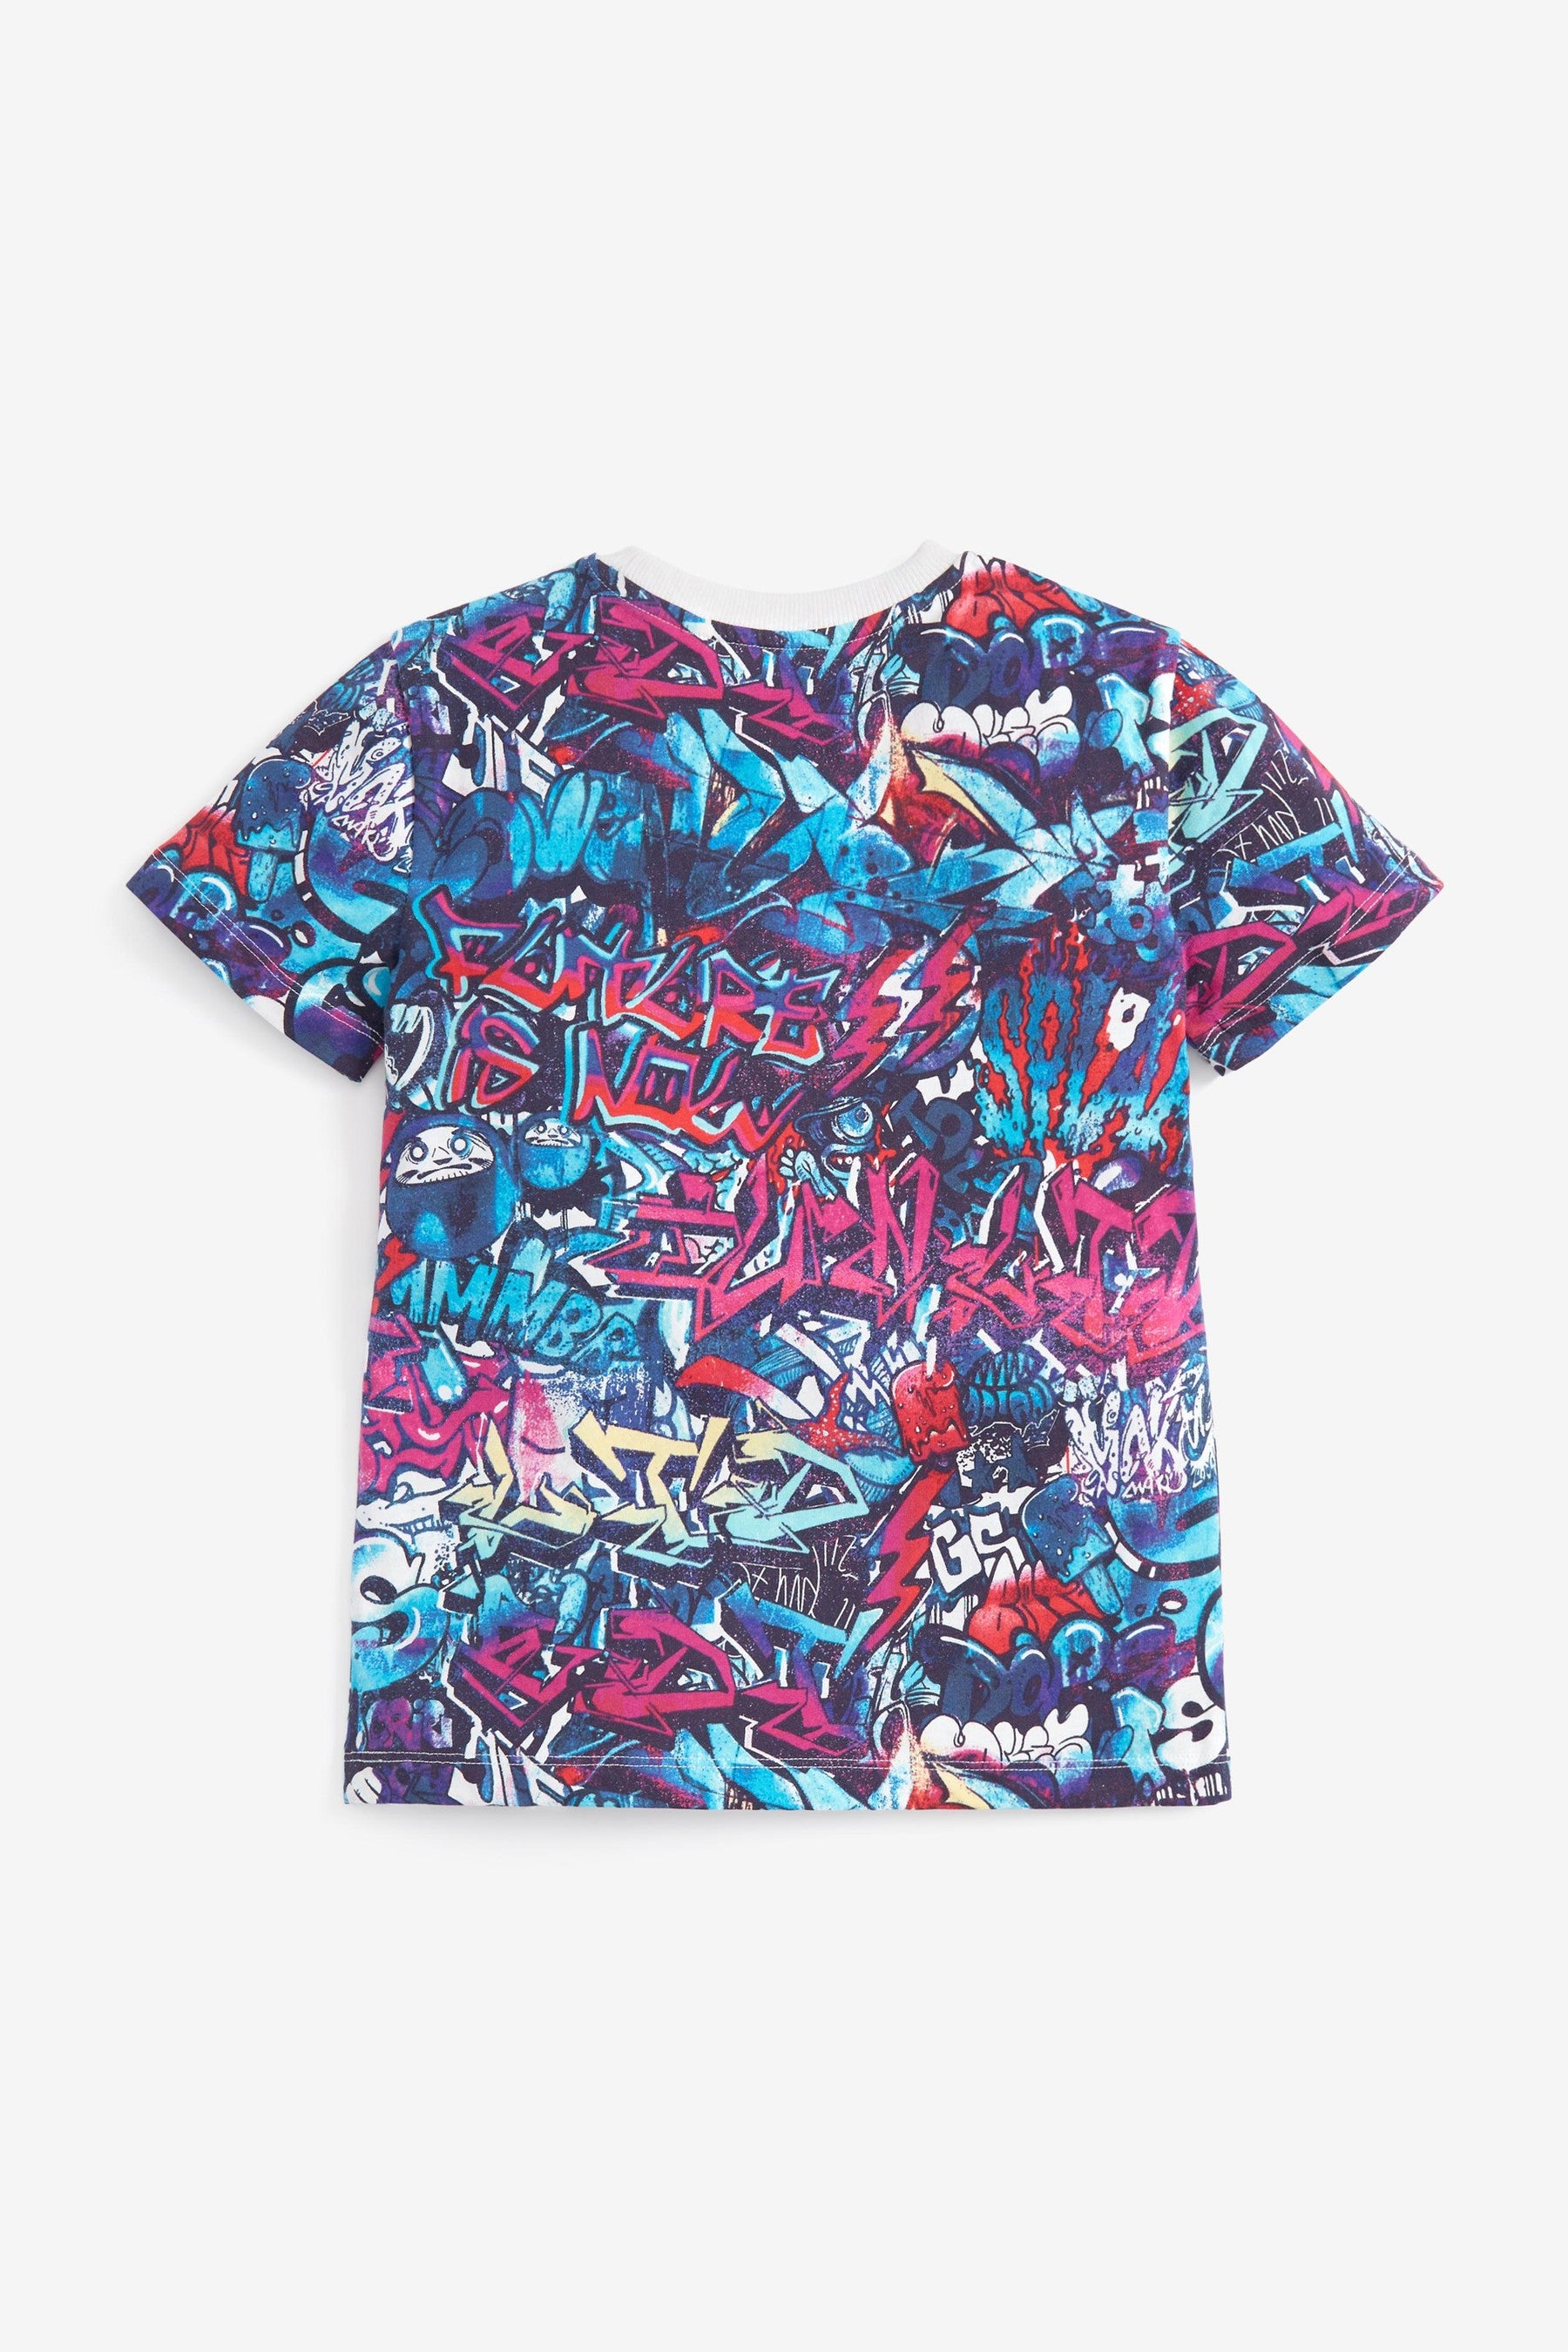 Multi Graffiti Print T-Shirt